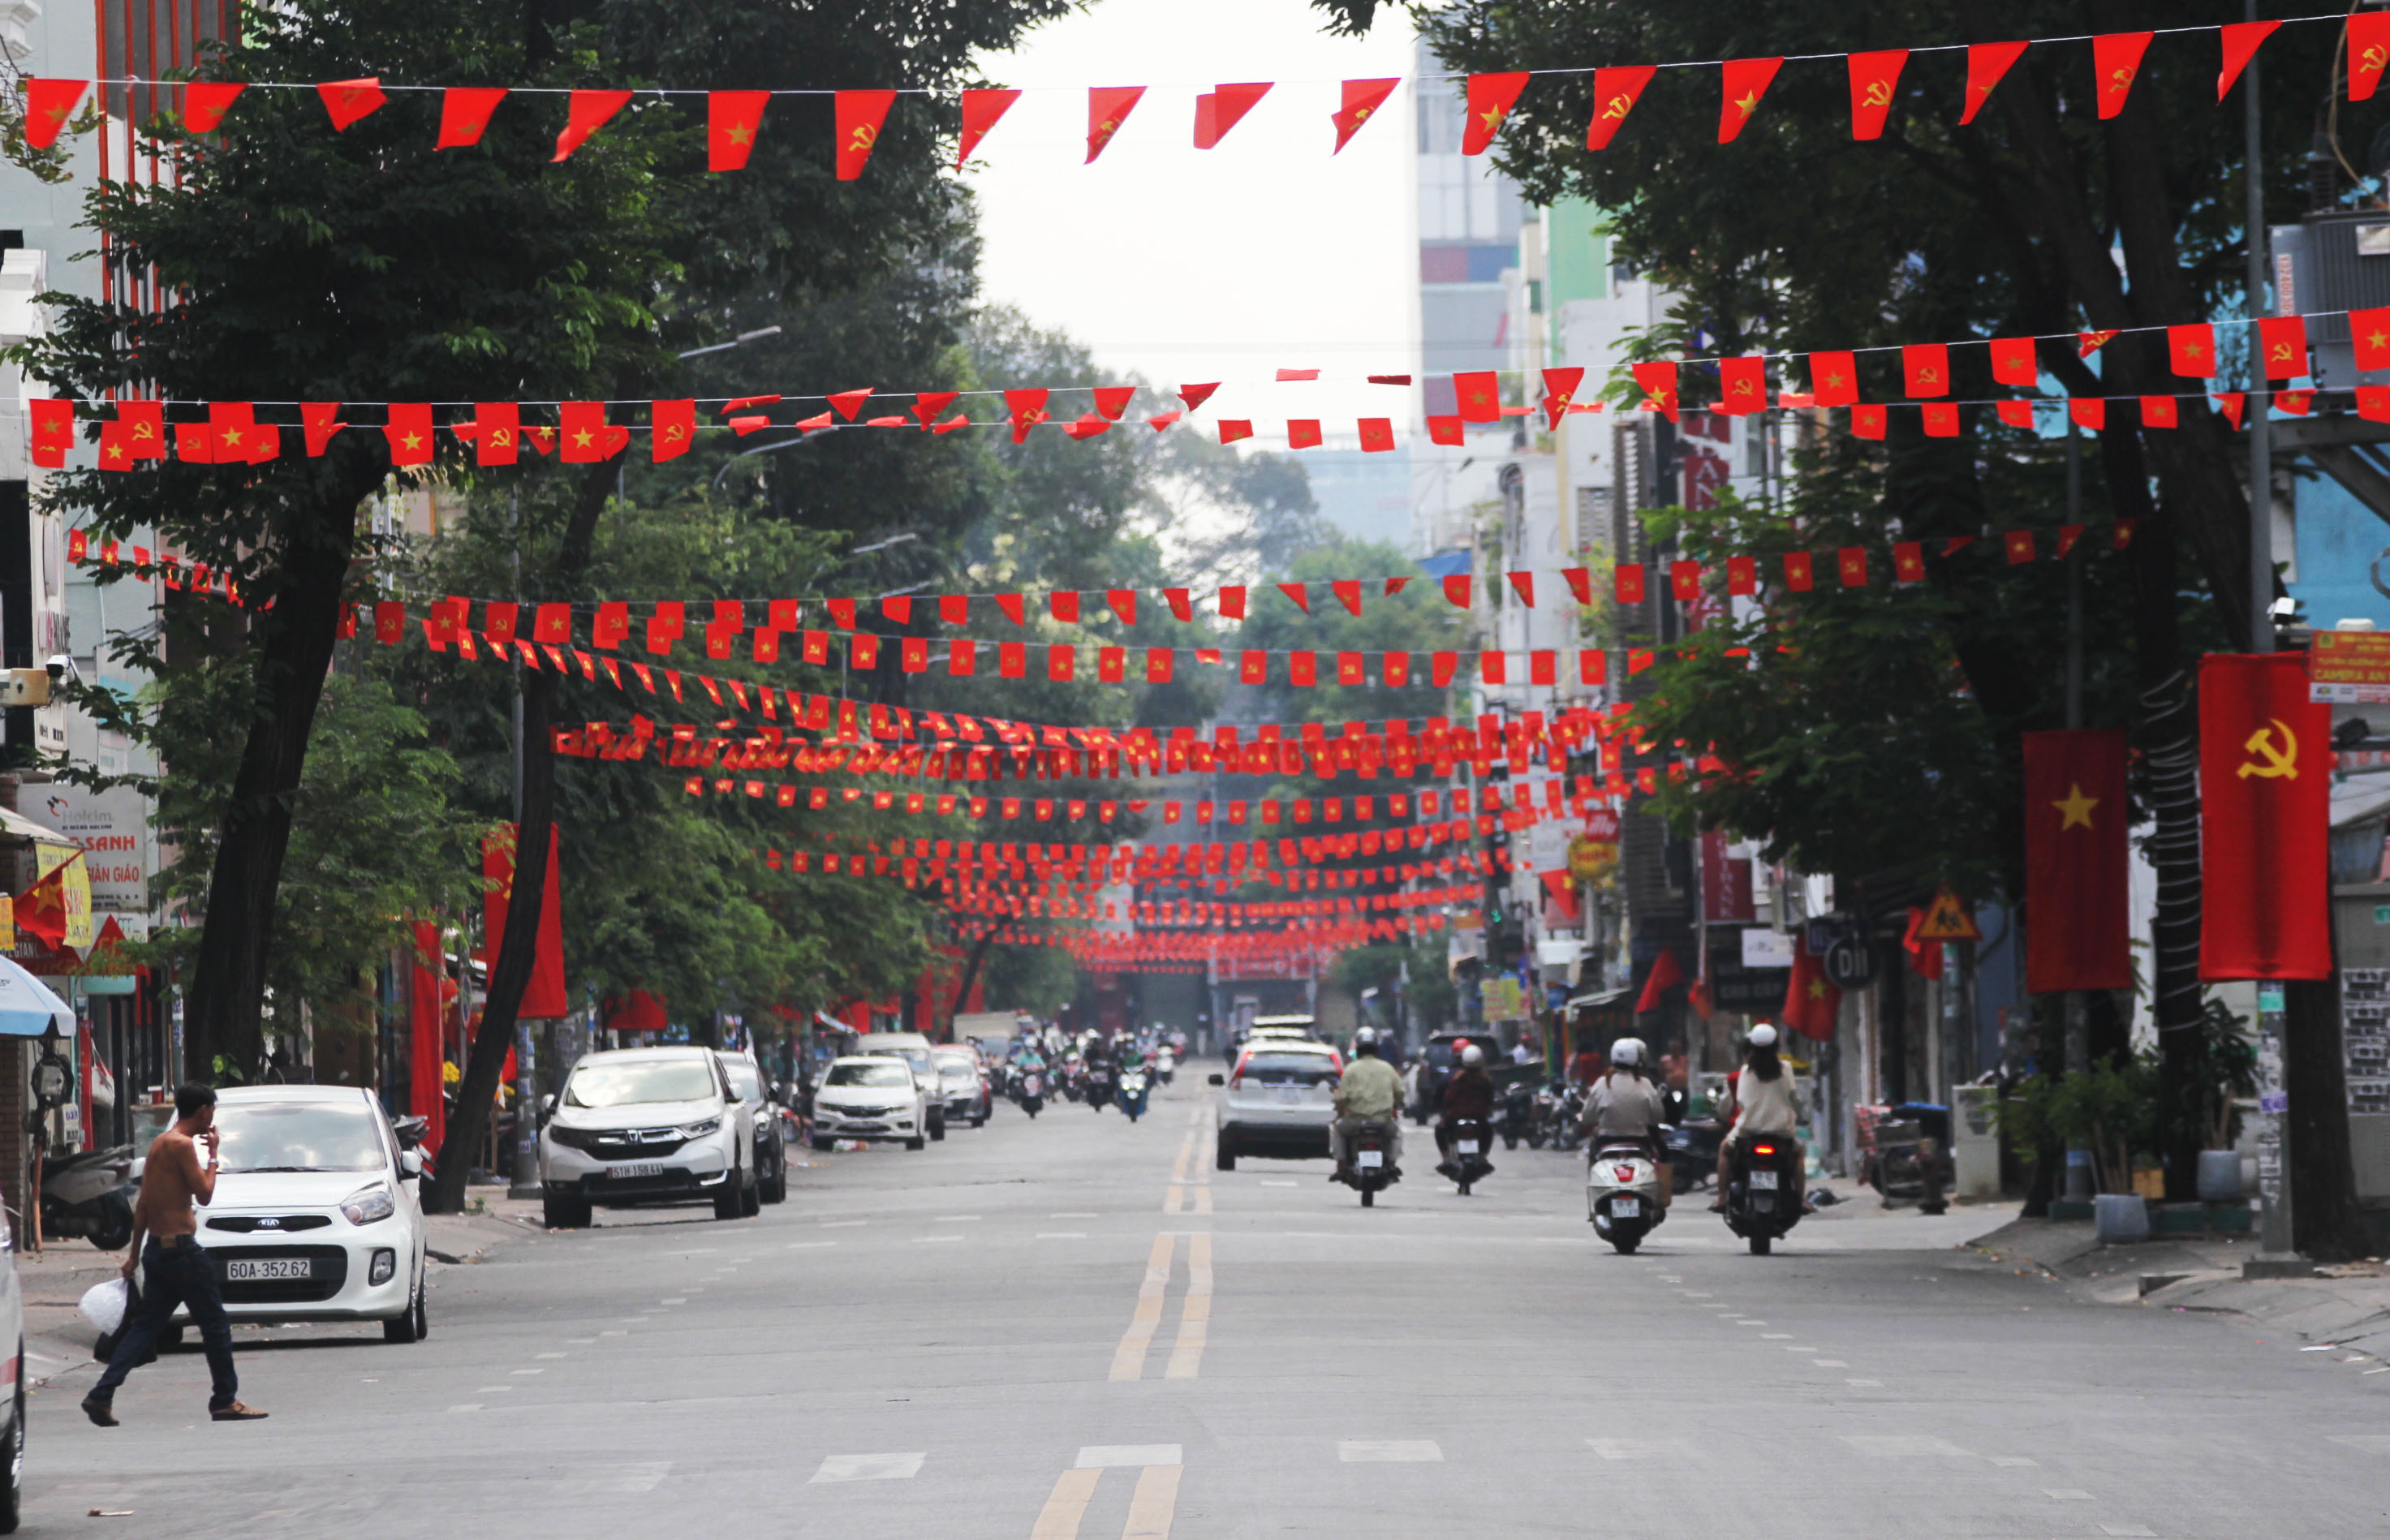 TP.HCM: Với nhịp sống động đúc và sự đa dạng về văn hóa, TP.HCM là điểm đến không thể bỏ lỡ khi ghé thăm Việt Nam. Thành phố thuận tiện cho du khách khám phá và trải nghiệm cuộc sống náo nhiệt của người dân địa phương.